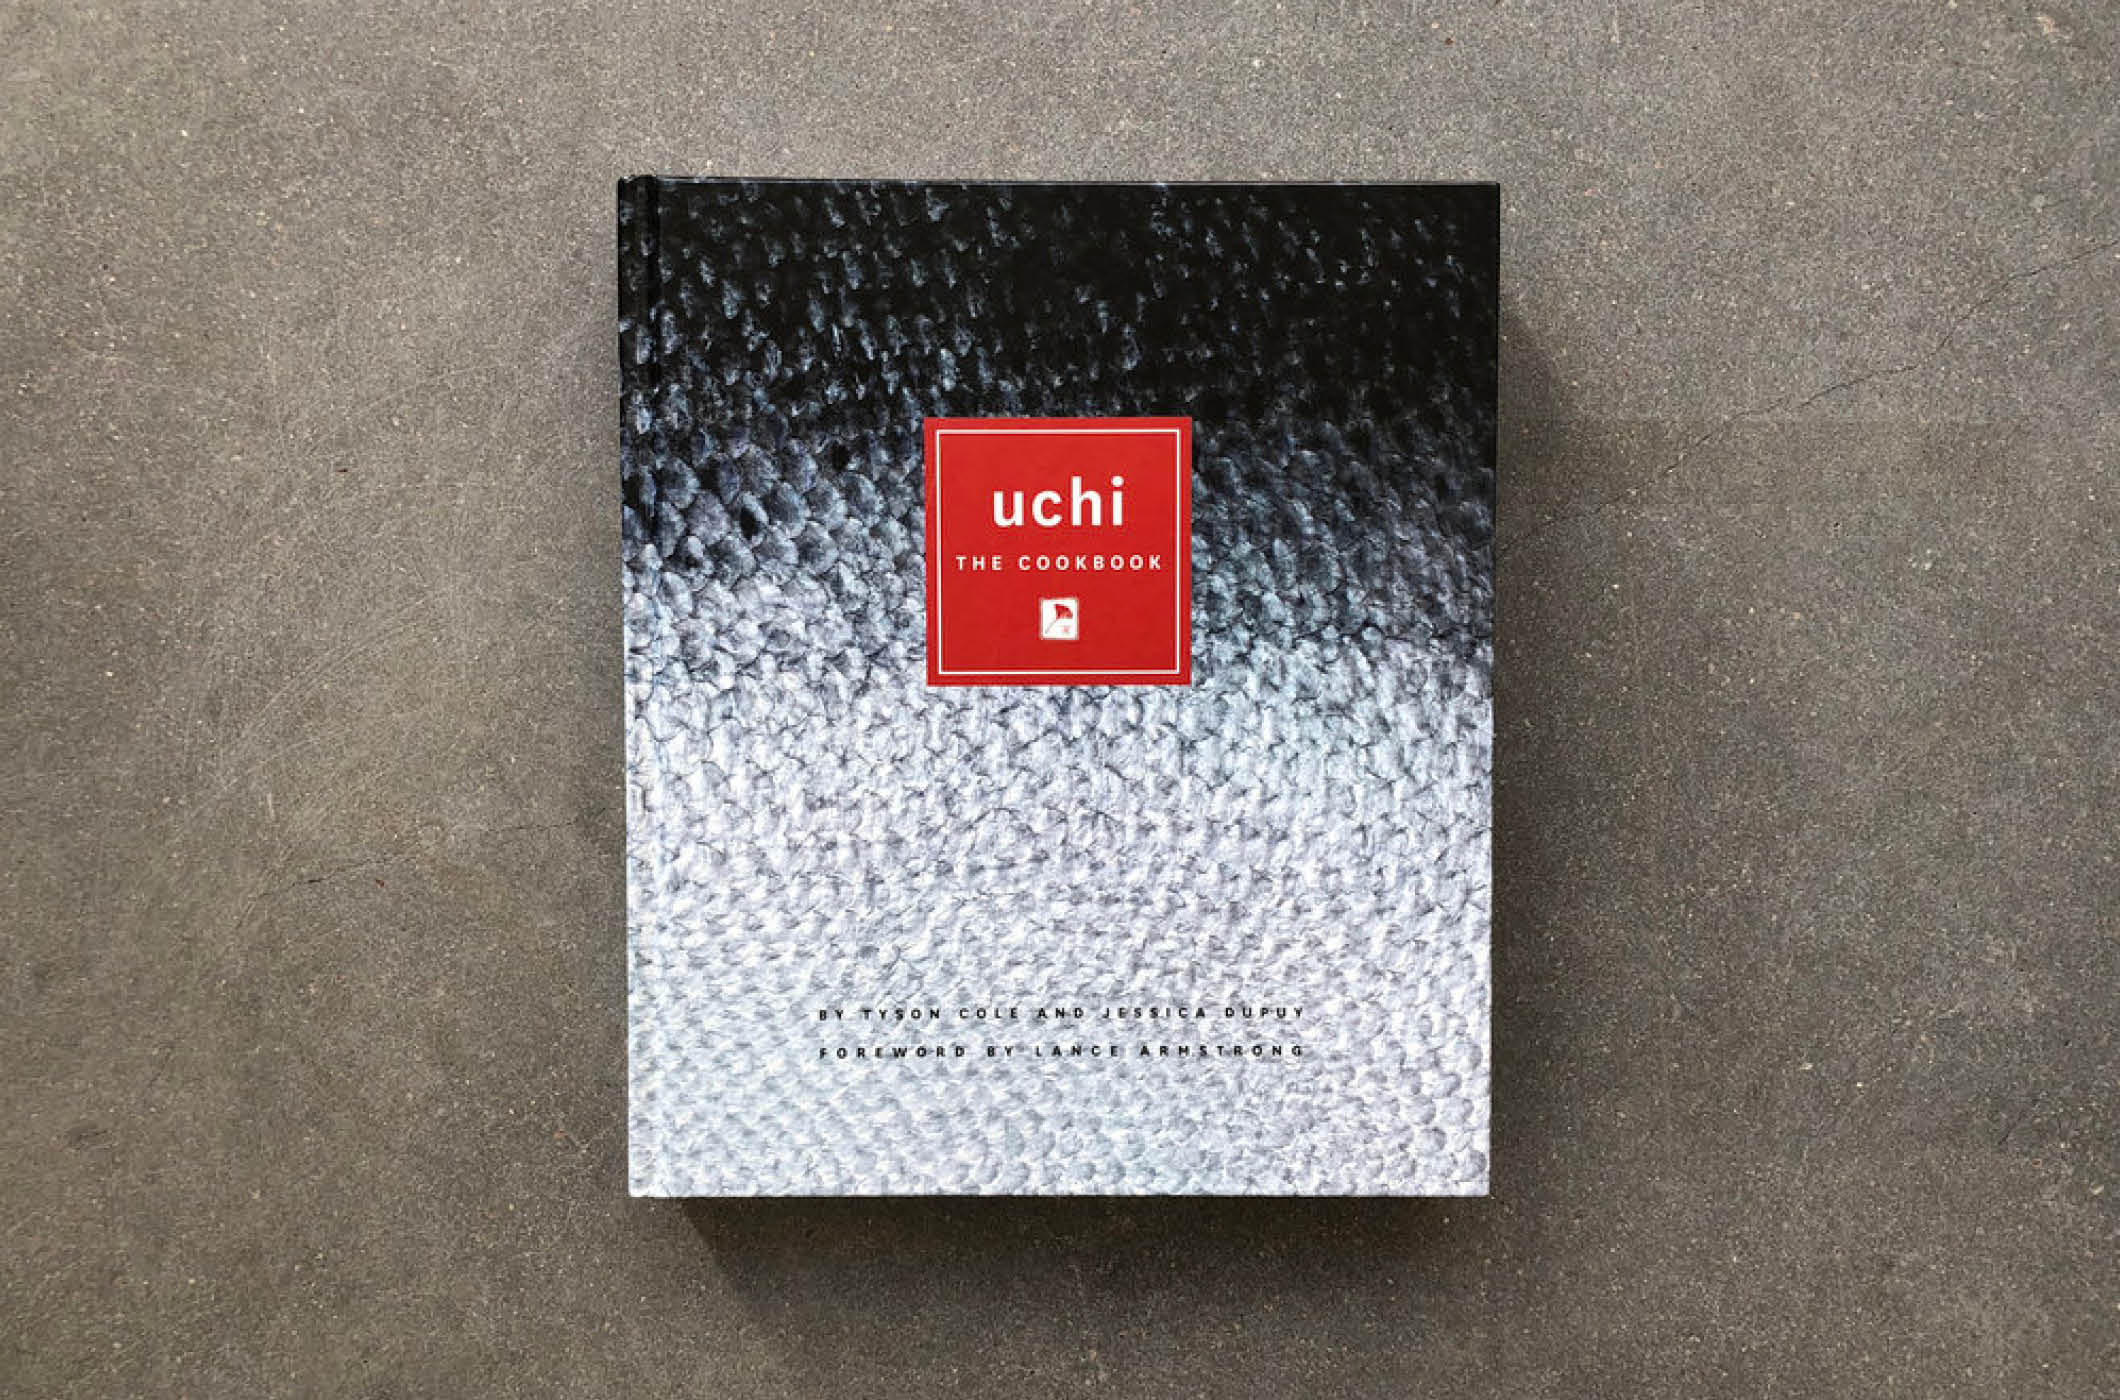 Uchi: The Cookbook